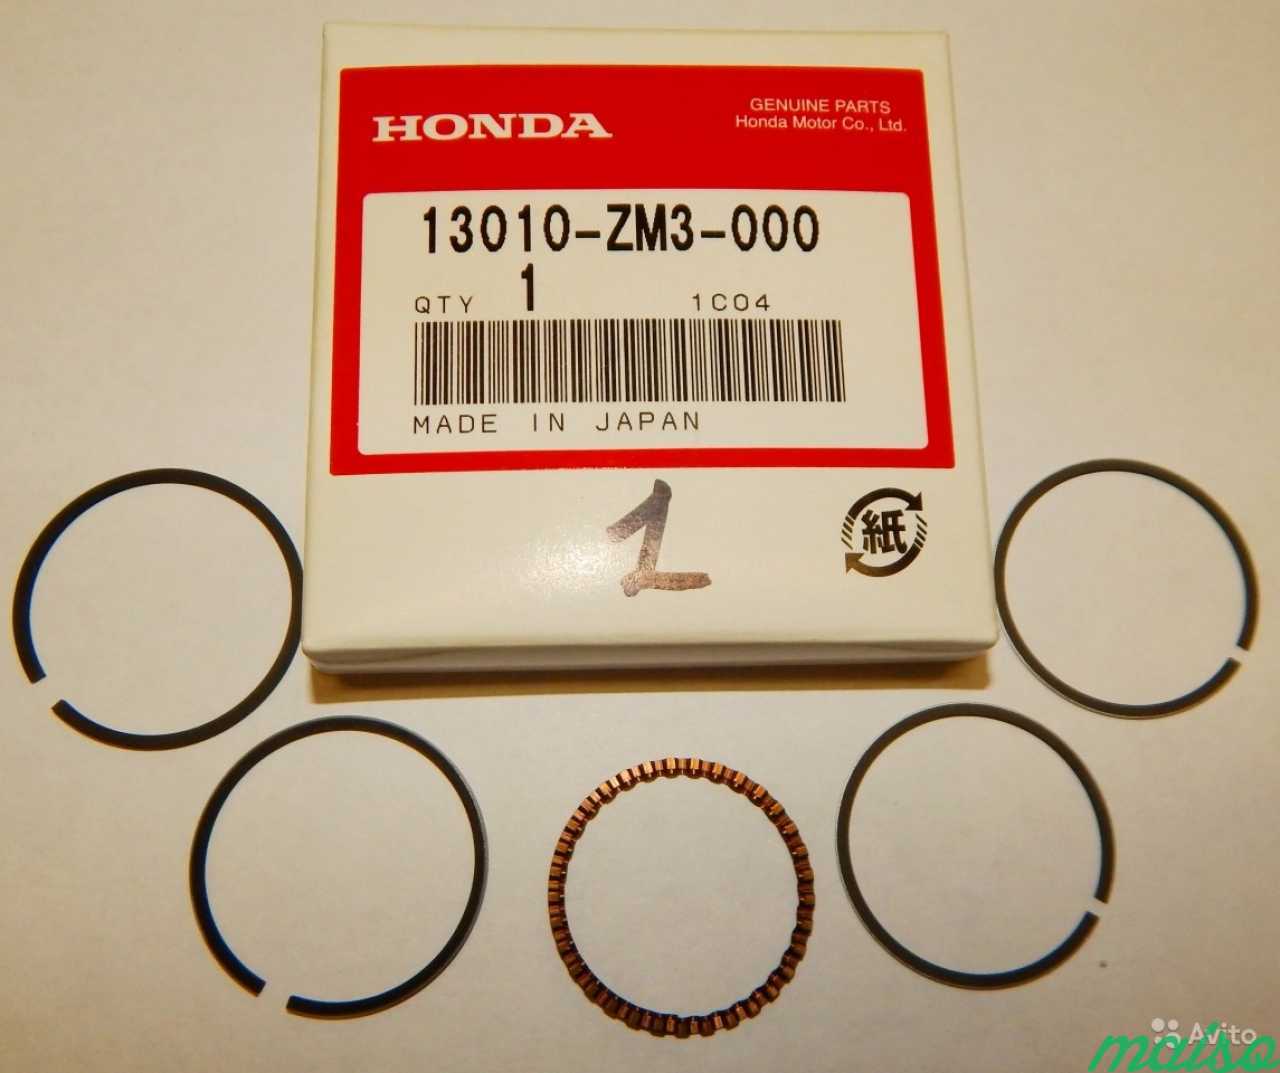 Кольца поршневые honda. Поршневые кольца Хонда лид 50. Поршневые кольца Хонда лого 1.3. Кольца Хонда 13010-z6l-003 made in Japan. Кольца Хонда 13010-z6l-00 made in Japan.